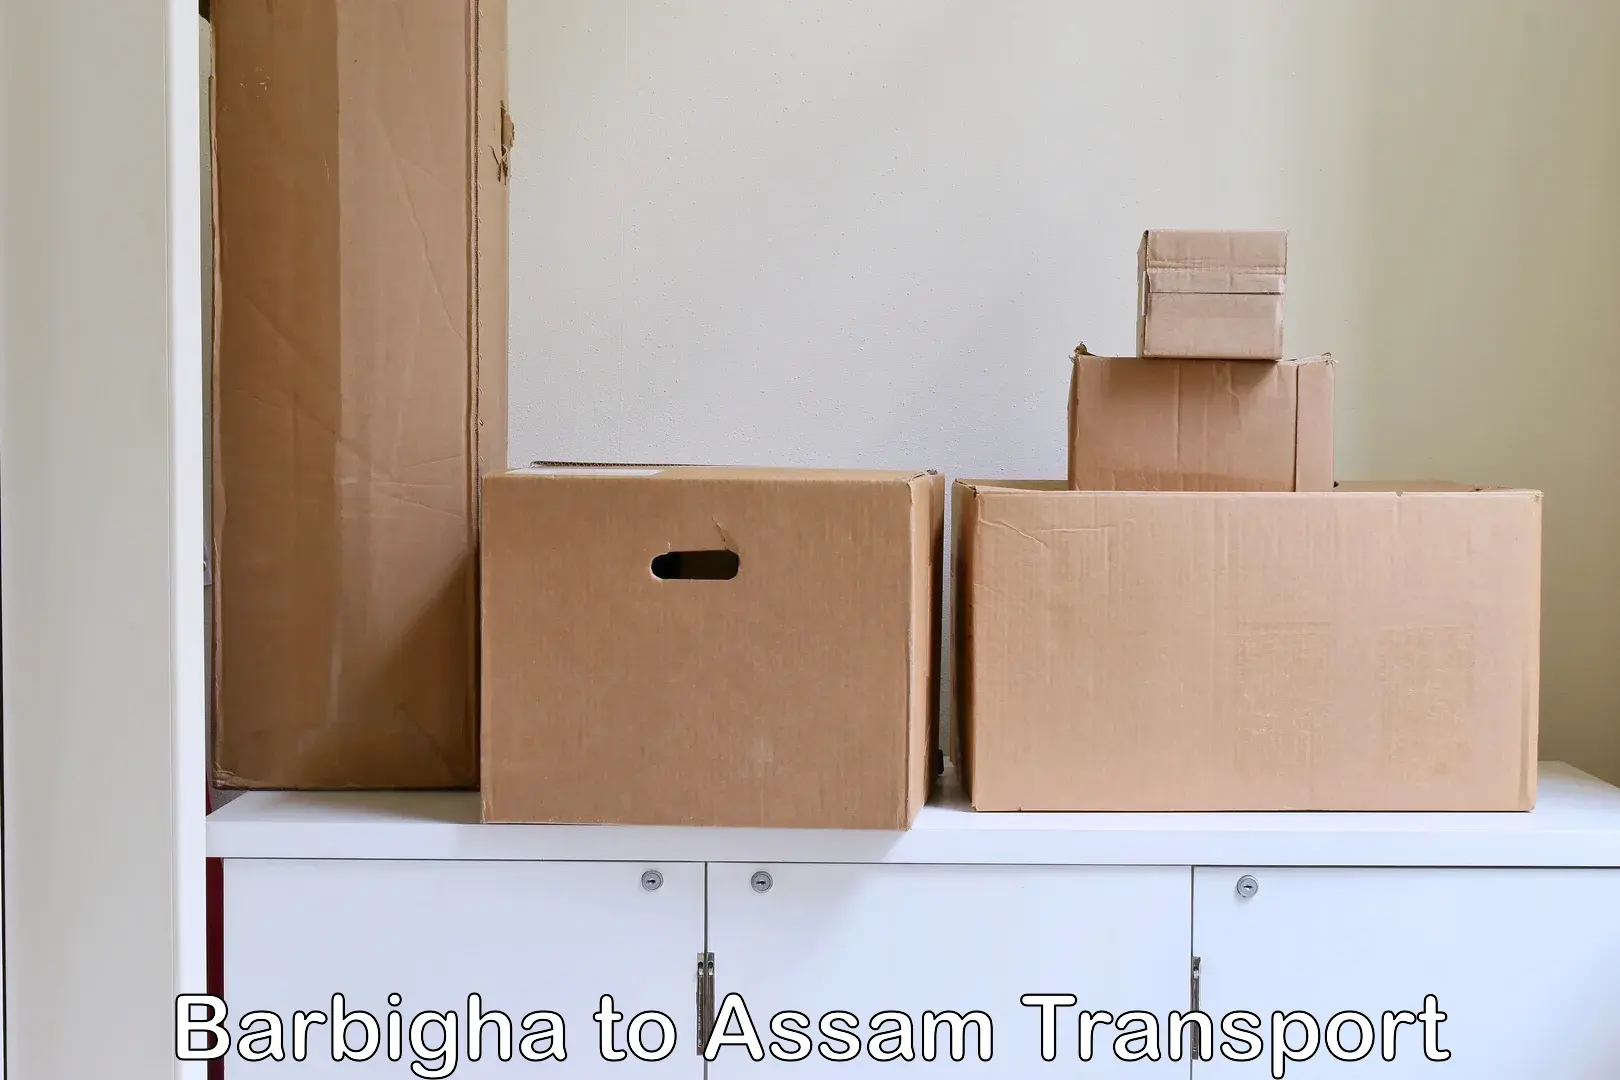 Nearest transport service Barbigha to Assam